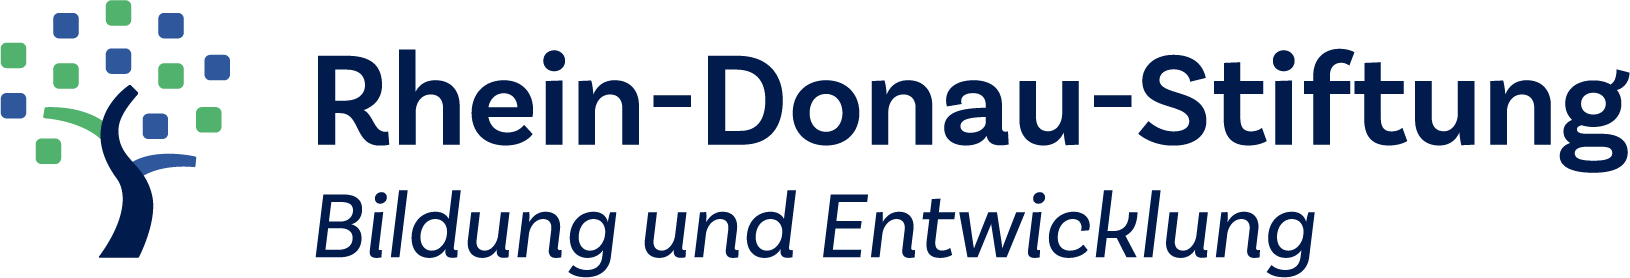 Rhein-Donau-Stiftung